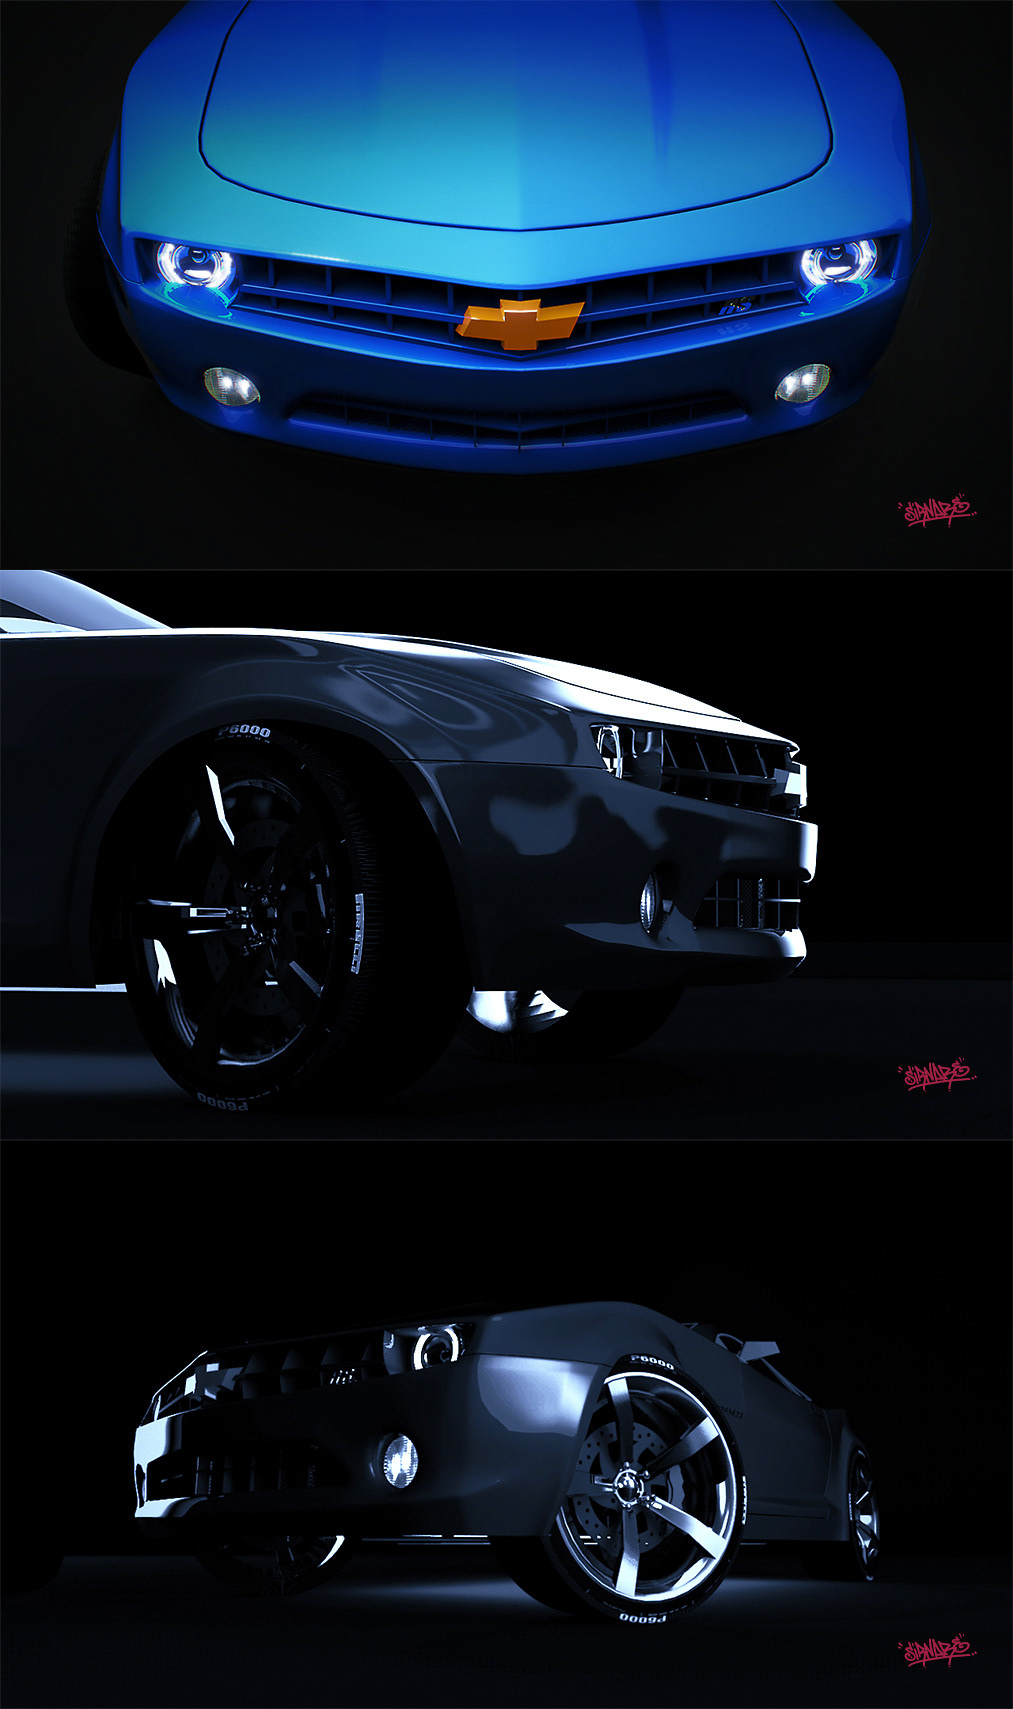 CGI 3D Renders vray cinema 4d kenya Automotive renders image based lighting